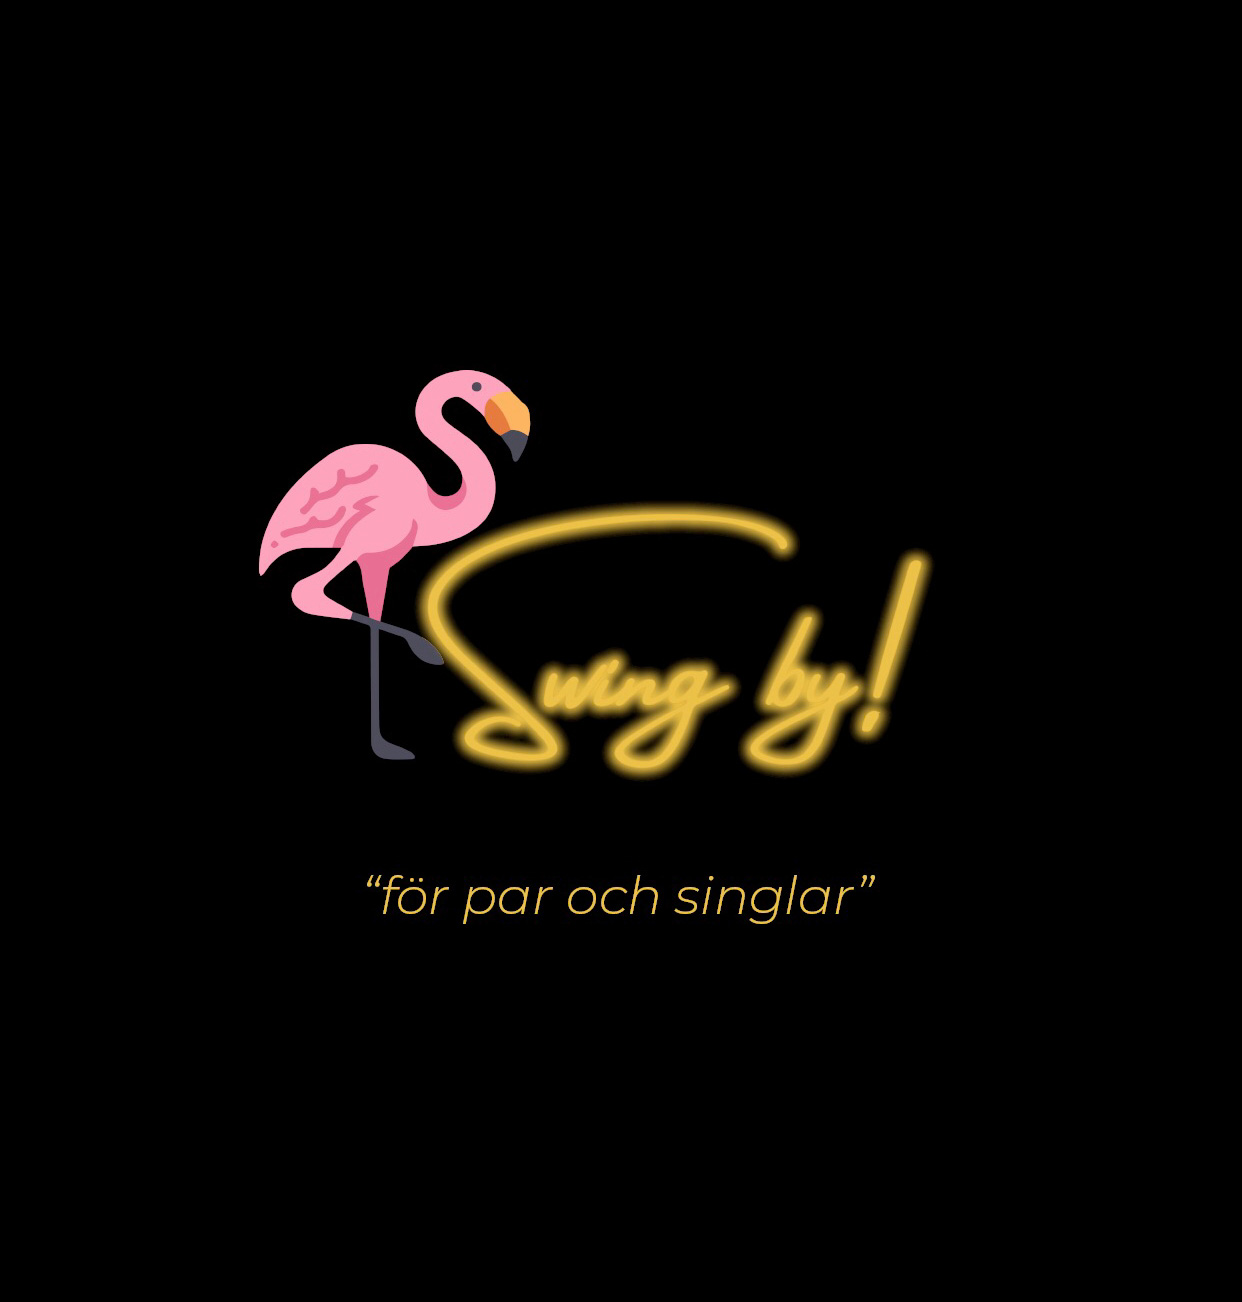 Swing by! - Sveriges första dejtingapp för Swingers, par och singlar! Foto